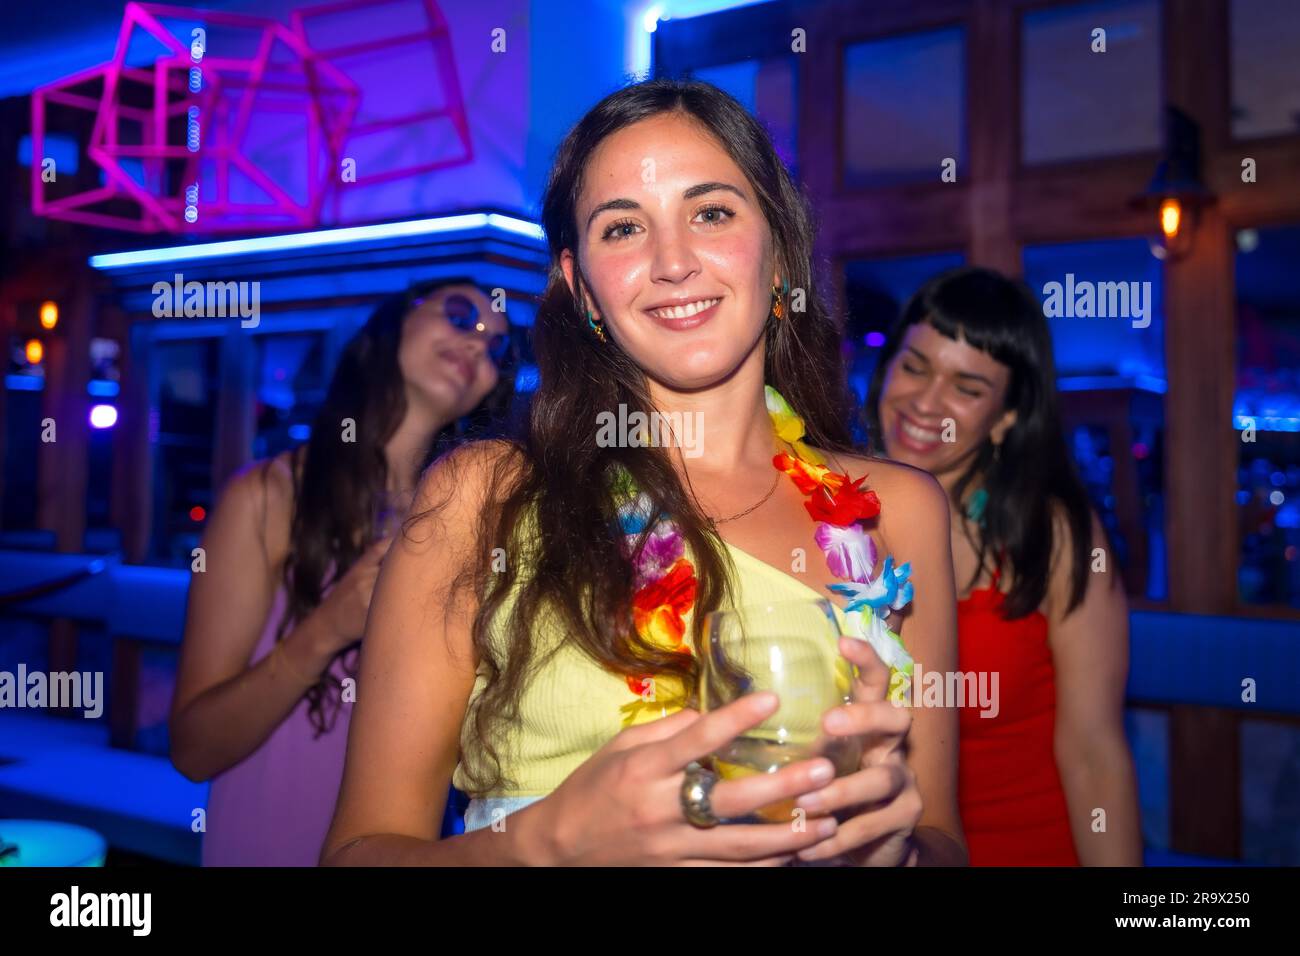 Belle femme souriant avec un verre d'alcool dans une boîte de nuit lors d'une soirée Banque D'Images